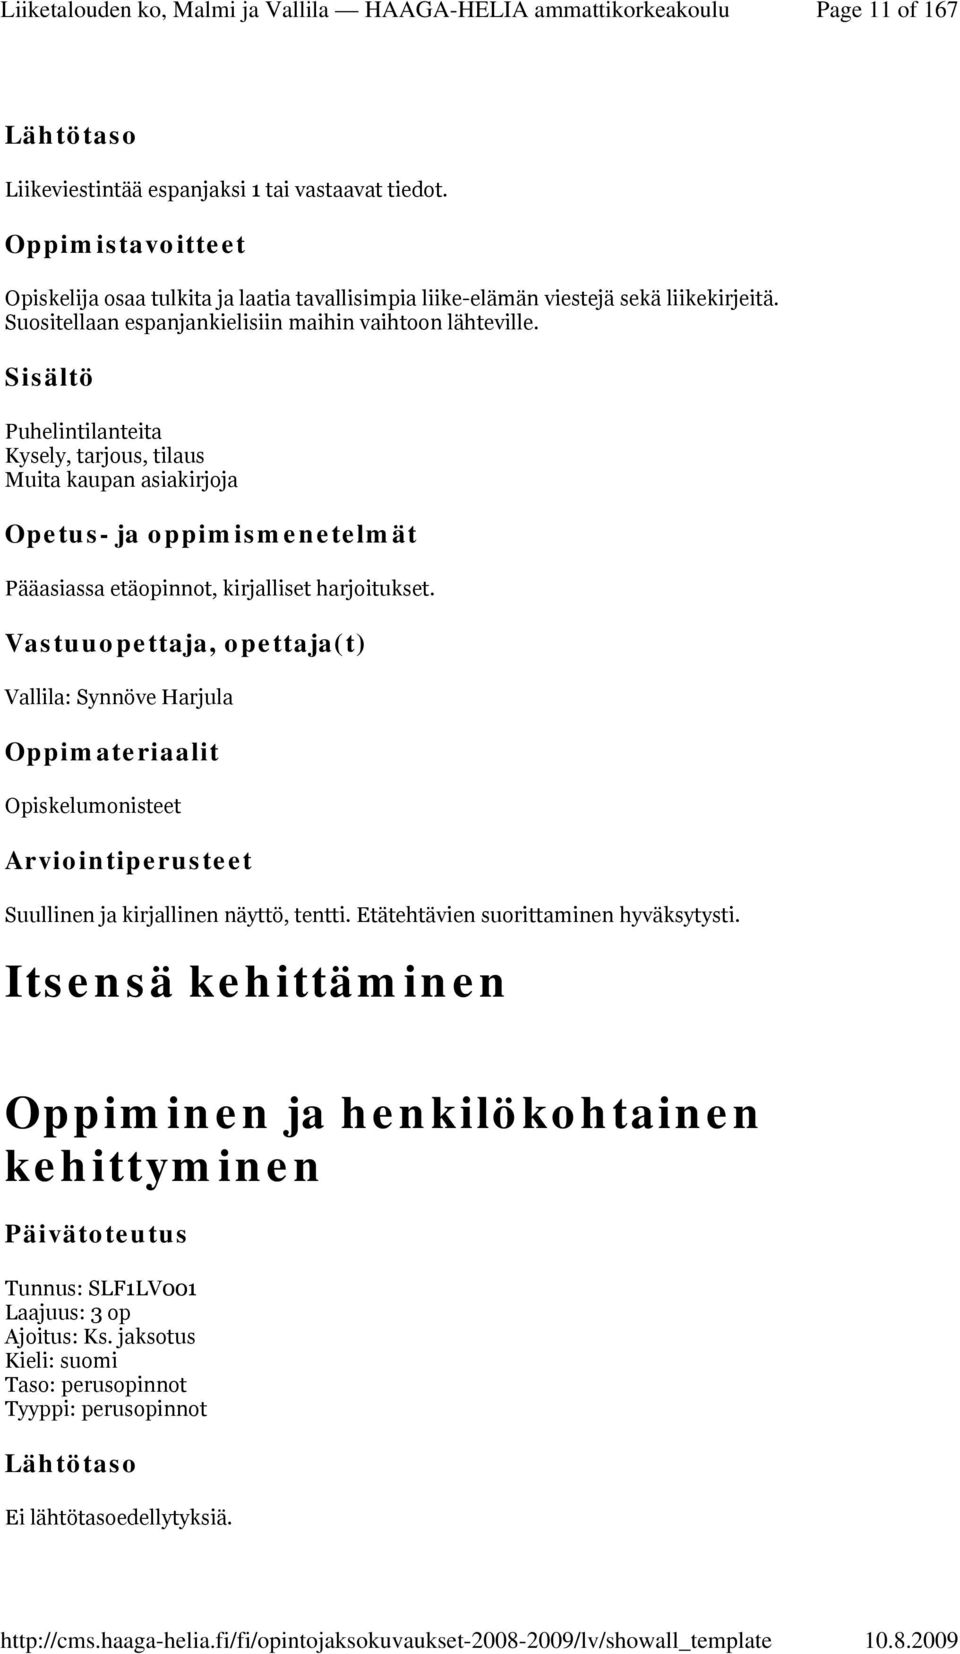 Puhelintilanteita Kysely, tarjous, tilaus Muita kaupan asiakirjoja Pääasiassa etäopinnot, kirjalliset harjoitukset.